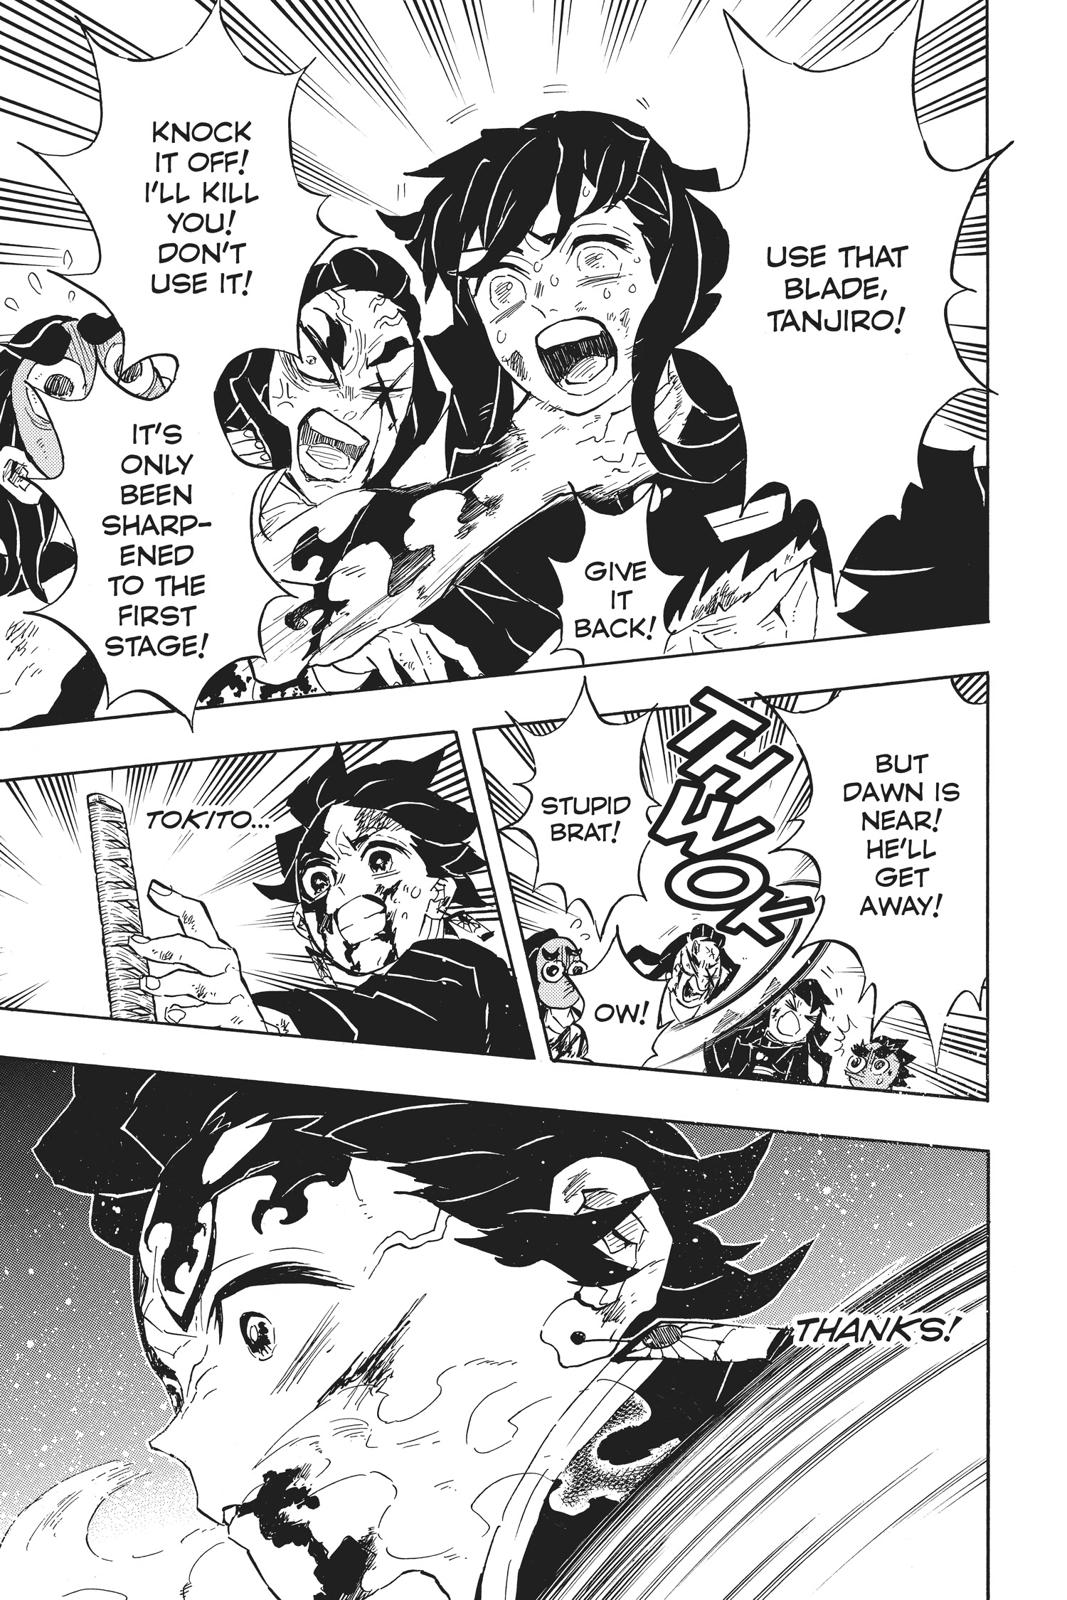 Demon Slayer Manga Manga Chapter - 125 - image 14